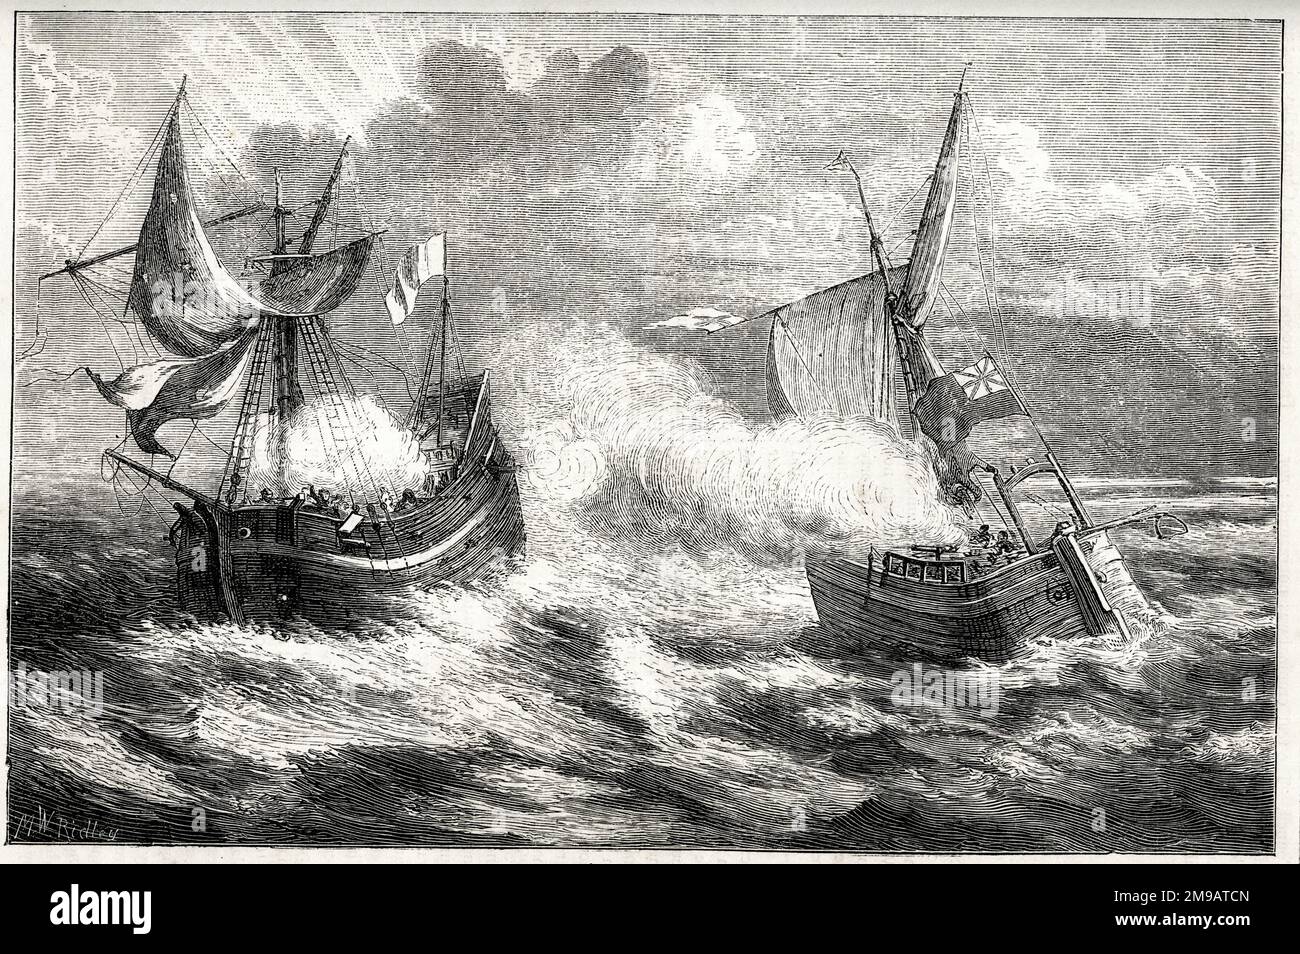 William Thompsons Kampf gegen Poole, Dorset, 30. Mai 1695. Thompson war ein einheimischer Fischer, auf dessen Fischerboot ein französischer Freibeuter in der Nähe der Insel Purbeck geschossen hat. Obwohl er 3 zu 16 und mit wenigen Waffen in der Überzahl war, verteidigte er sich tapfer für zwei Stunden und verwundete einige der französischen Aggressoren. Das französische Schiff geriet schließlich in Schwierigkeiten und Thompson übernahm die Kontrolle, segelte sie nach Poole und erhielt eine Belohnung von den Lords der Admiralität. Stockfoto